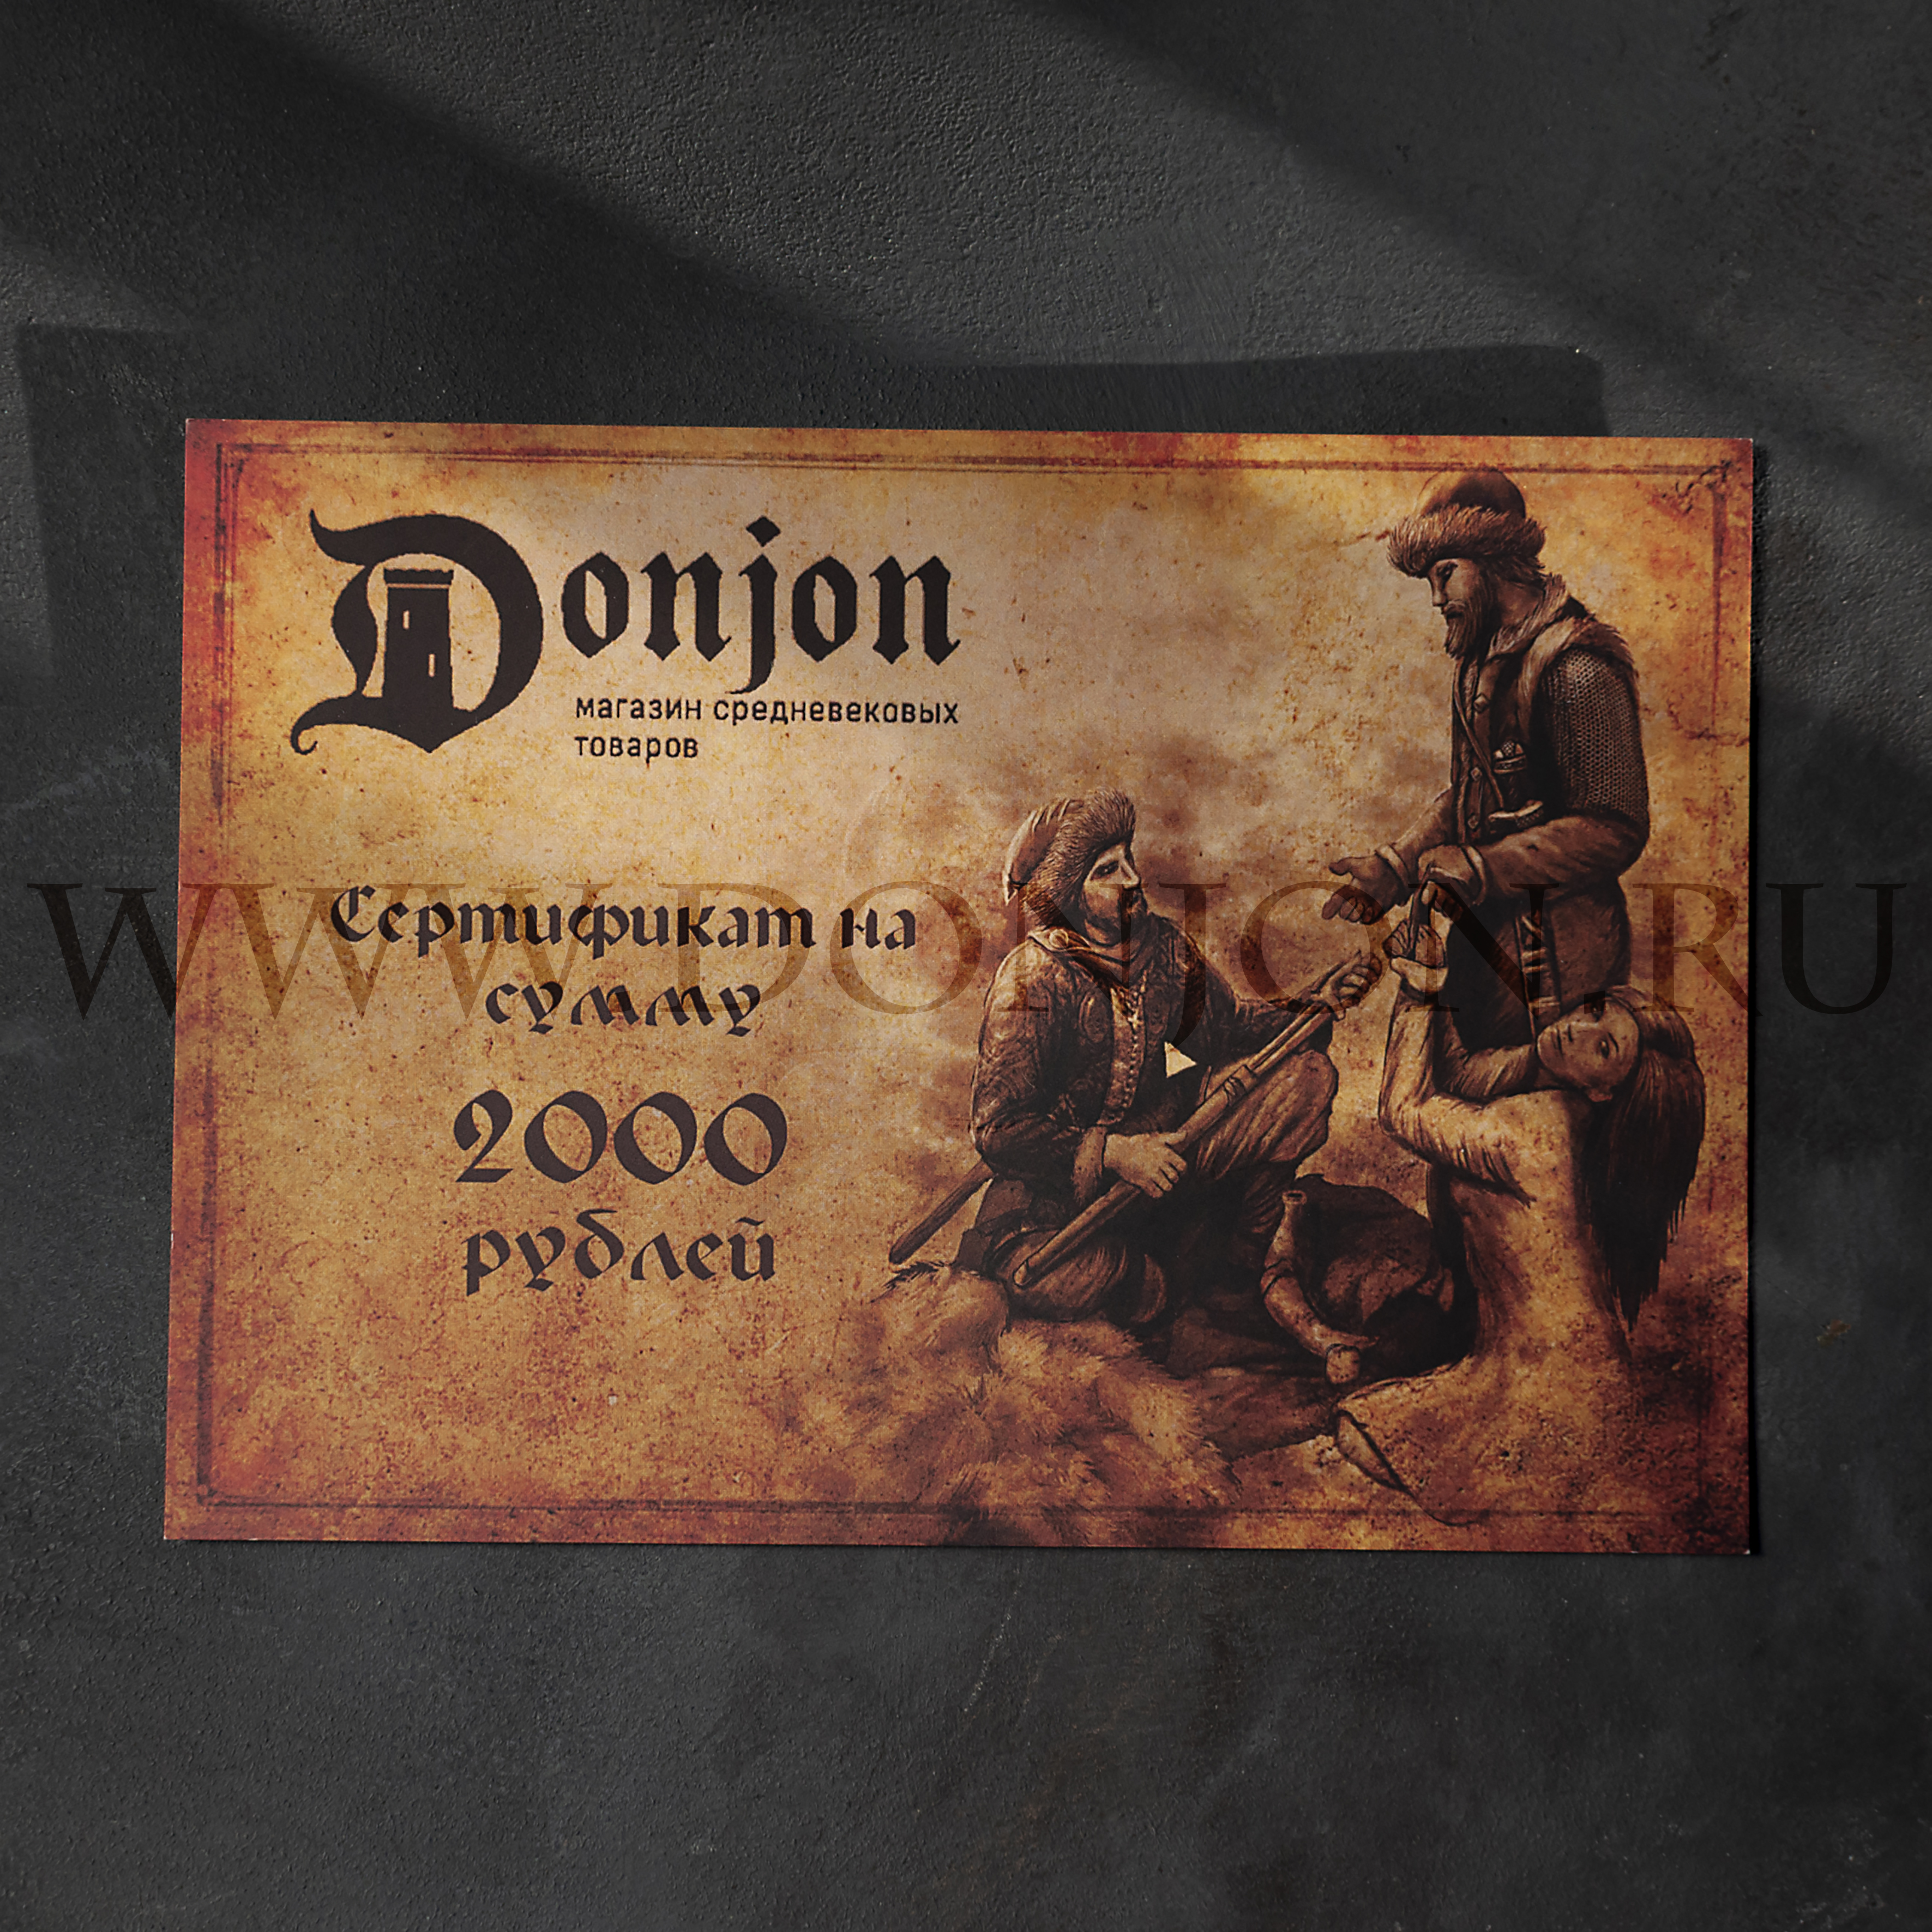 Подарочный сертификат магазина "Донжон"